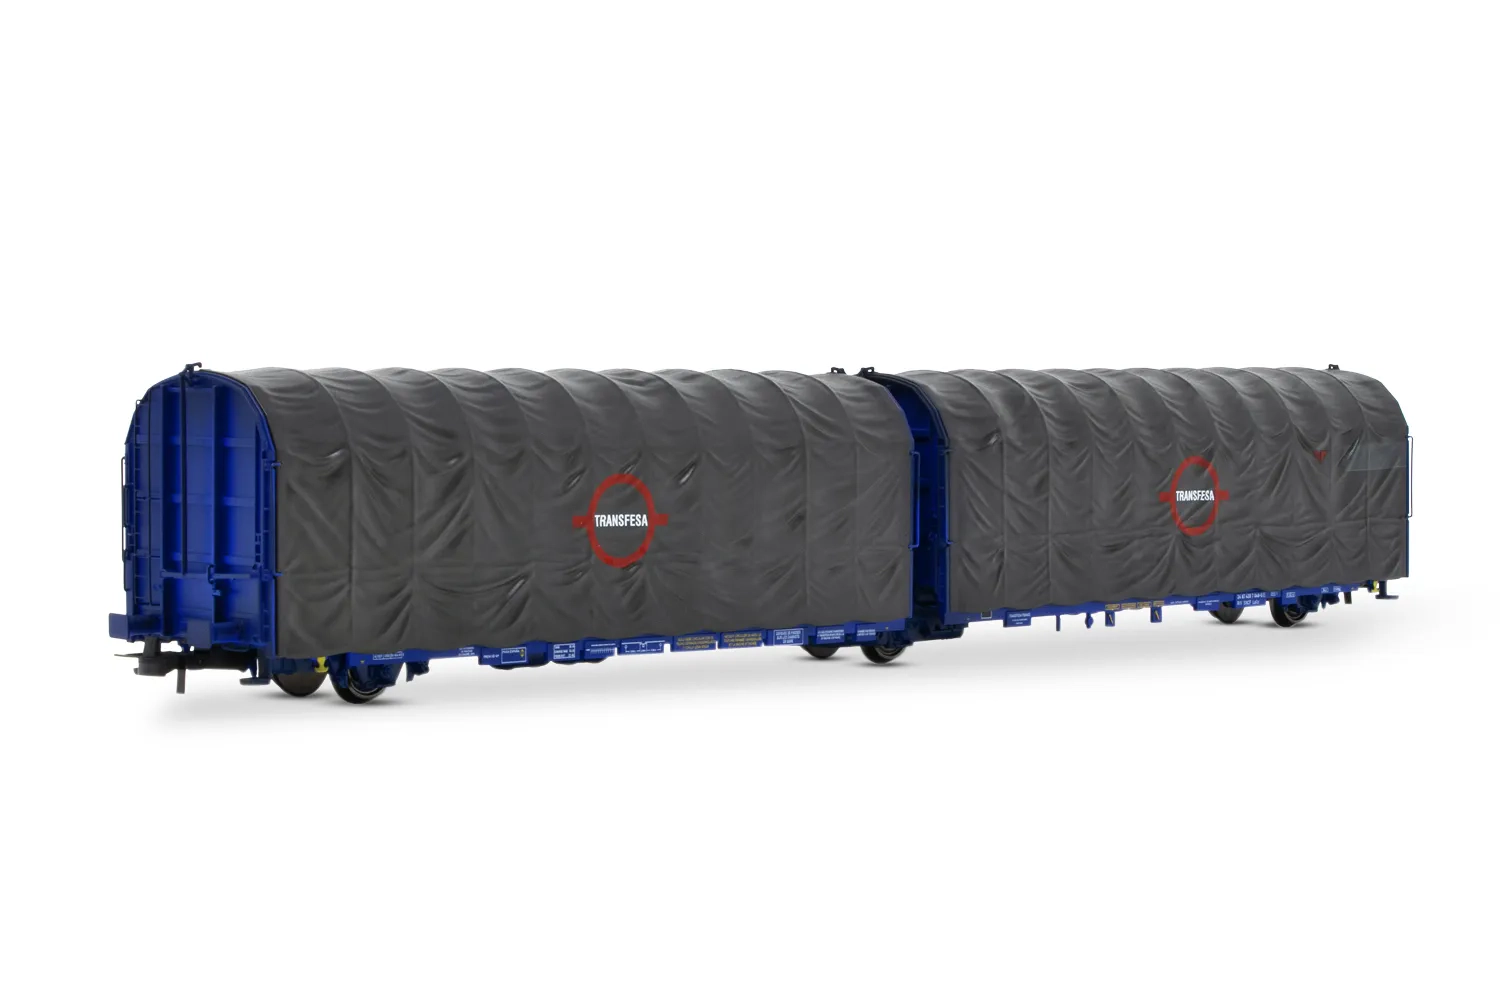 TRANSFESA, vagón articulado entoldado tipo Lails de 3 ejes, logo grande, ép. IV